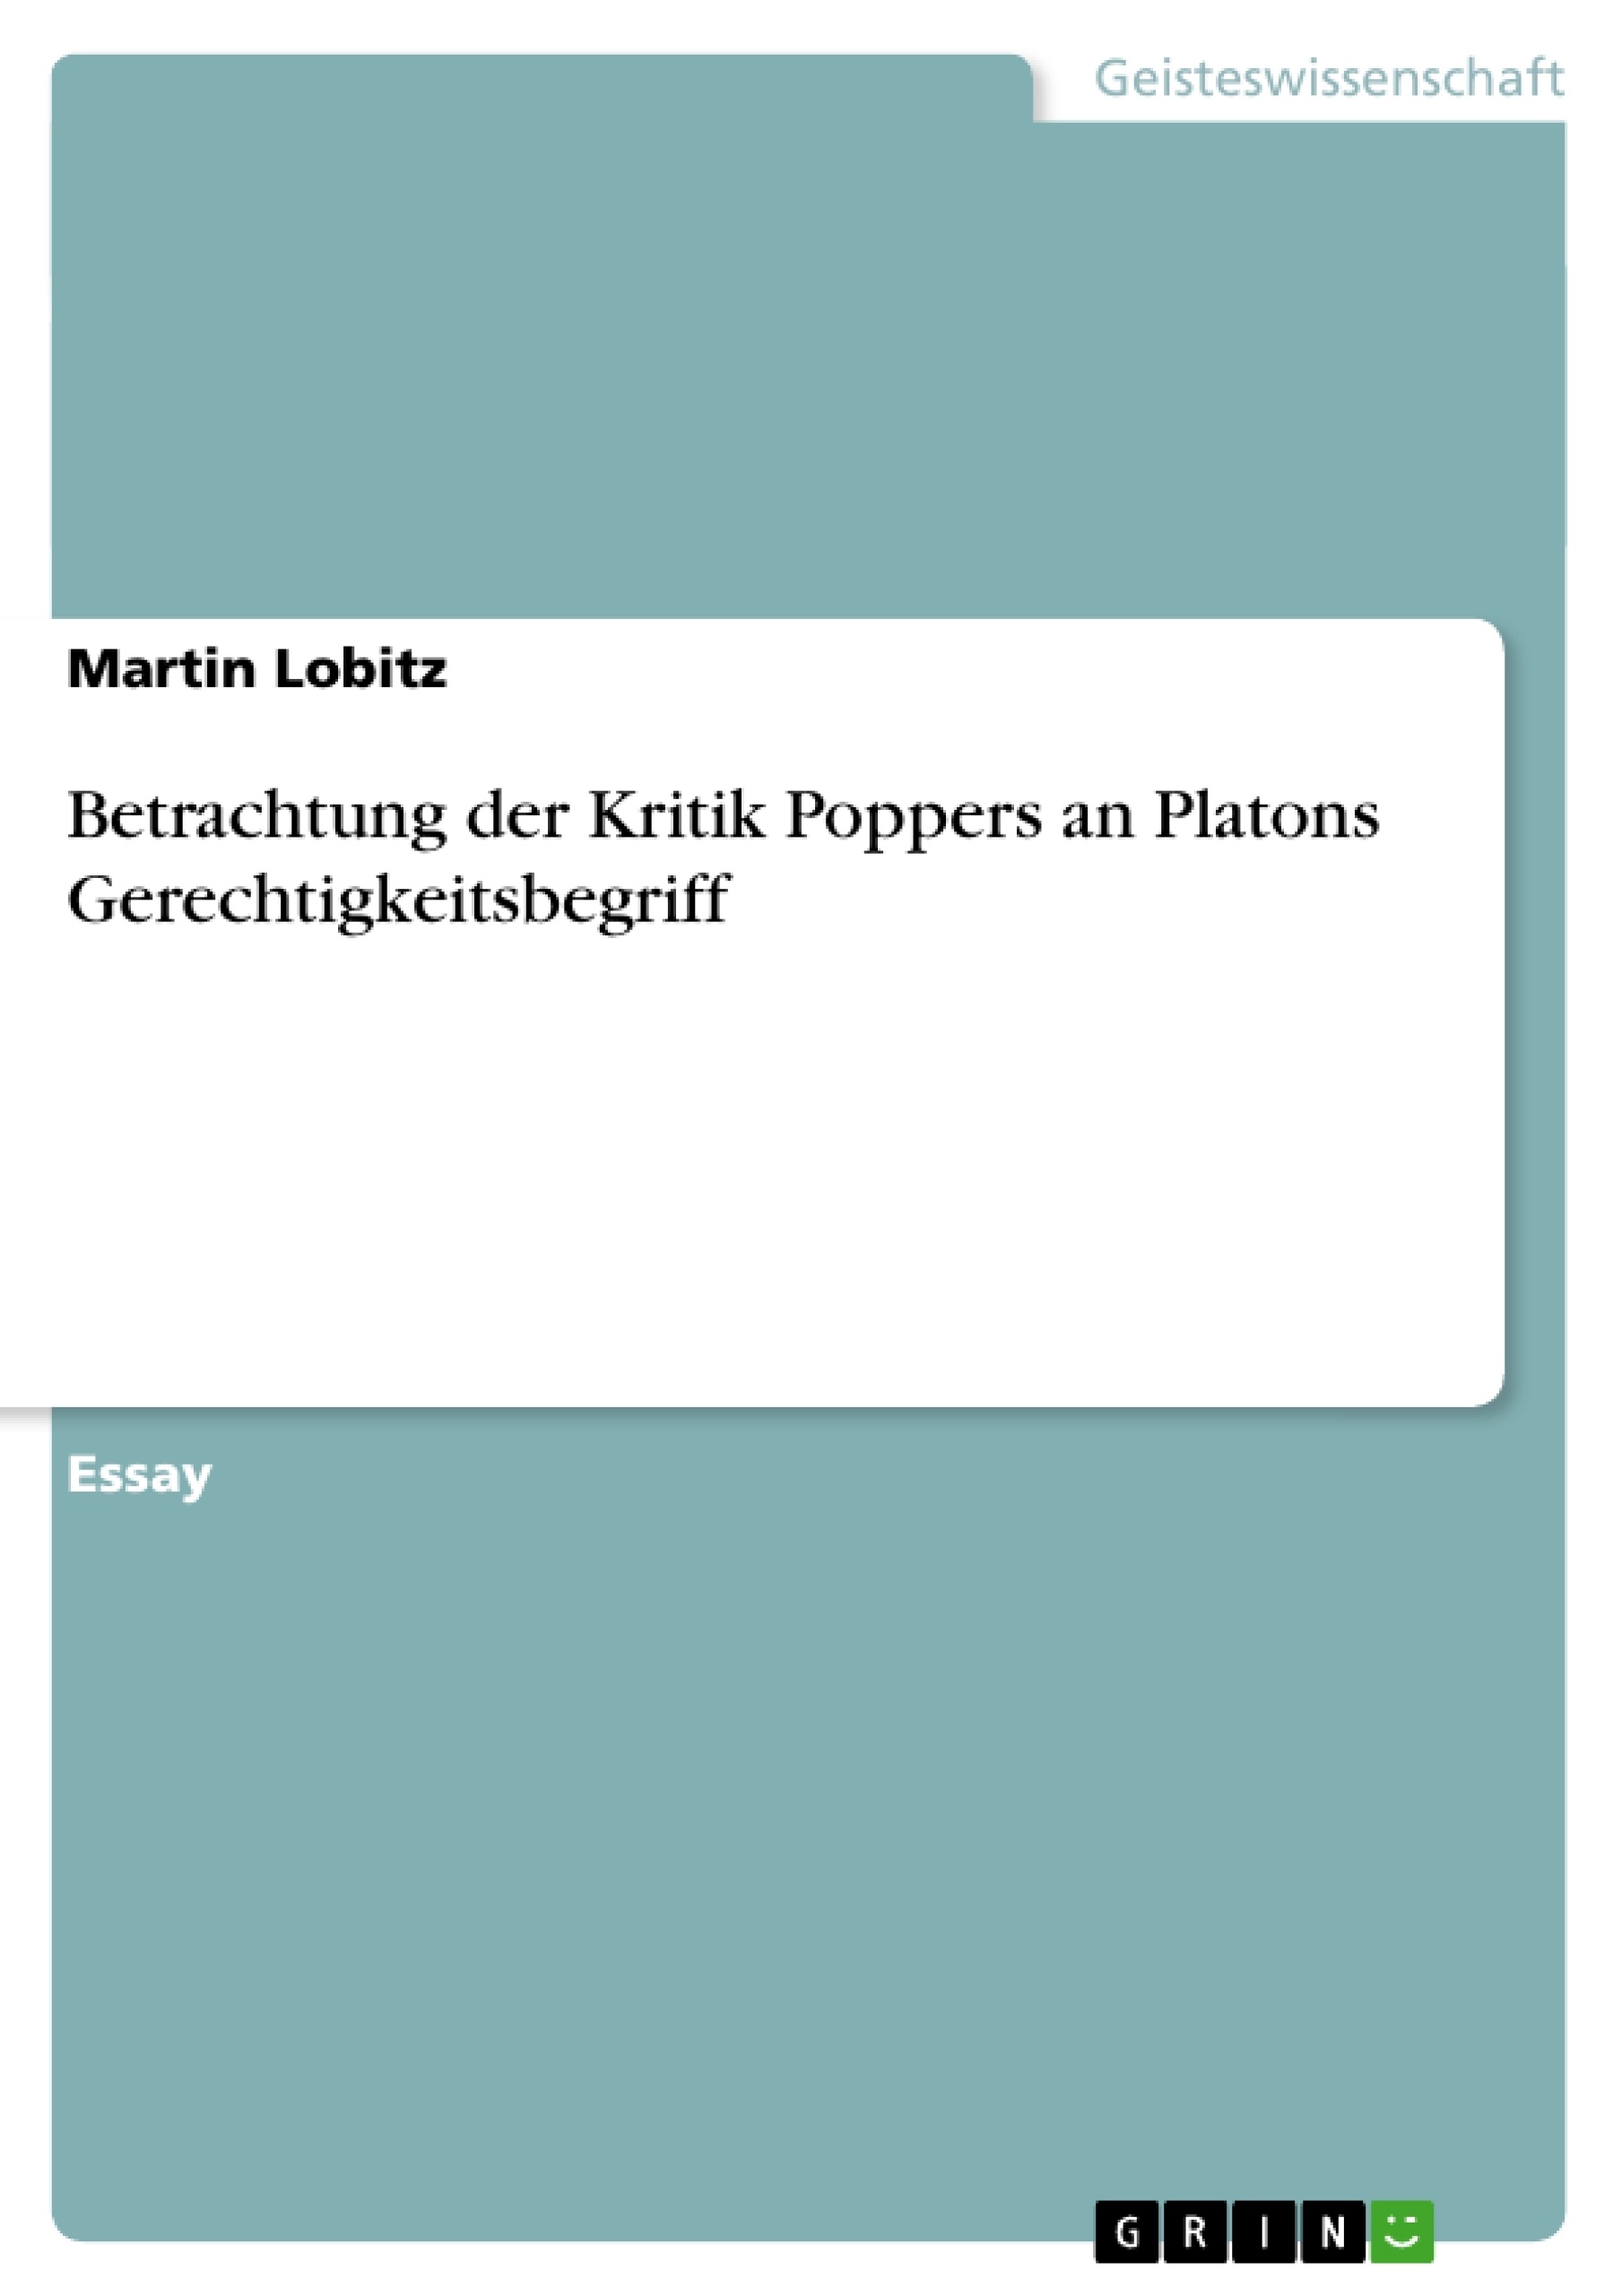 Title: Betrachtung der Kritik Poppers an Platons Gerechtigkeitsbegriff